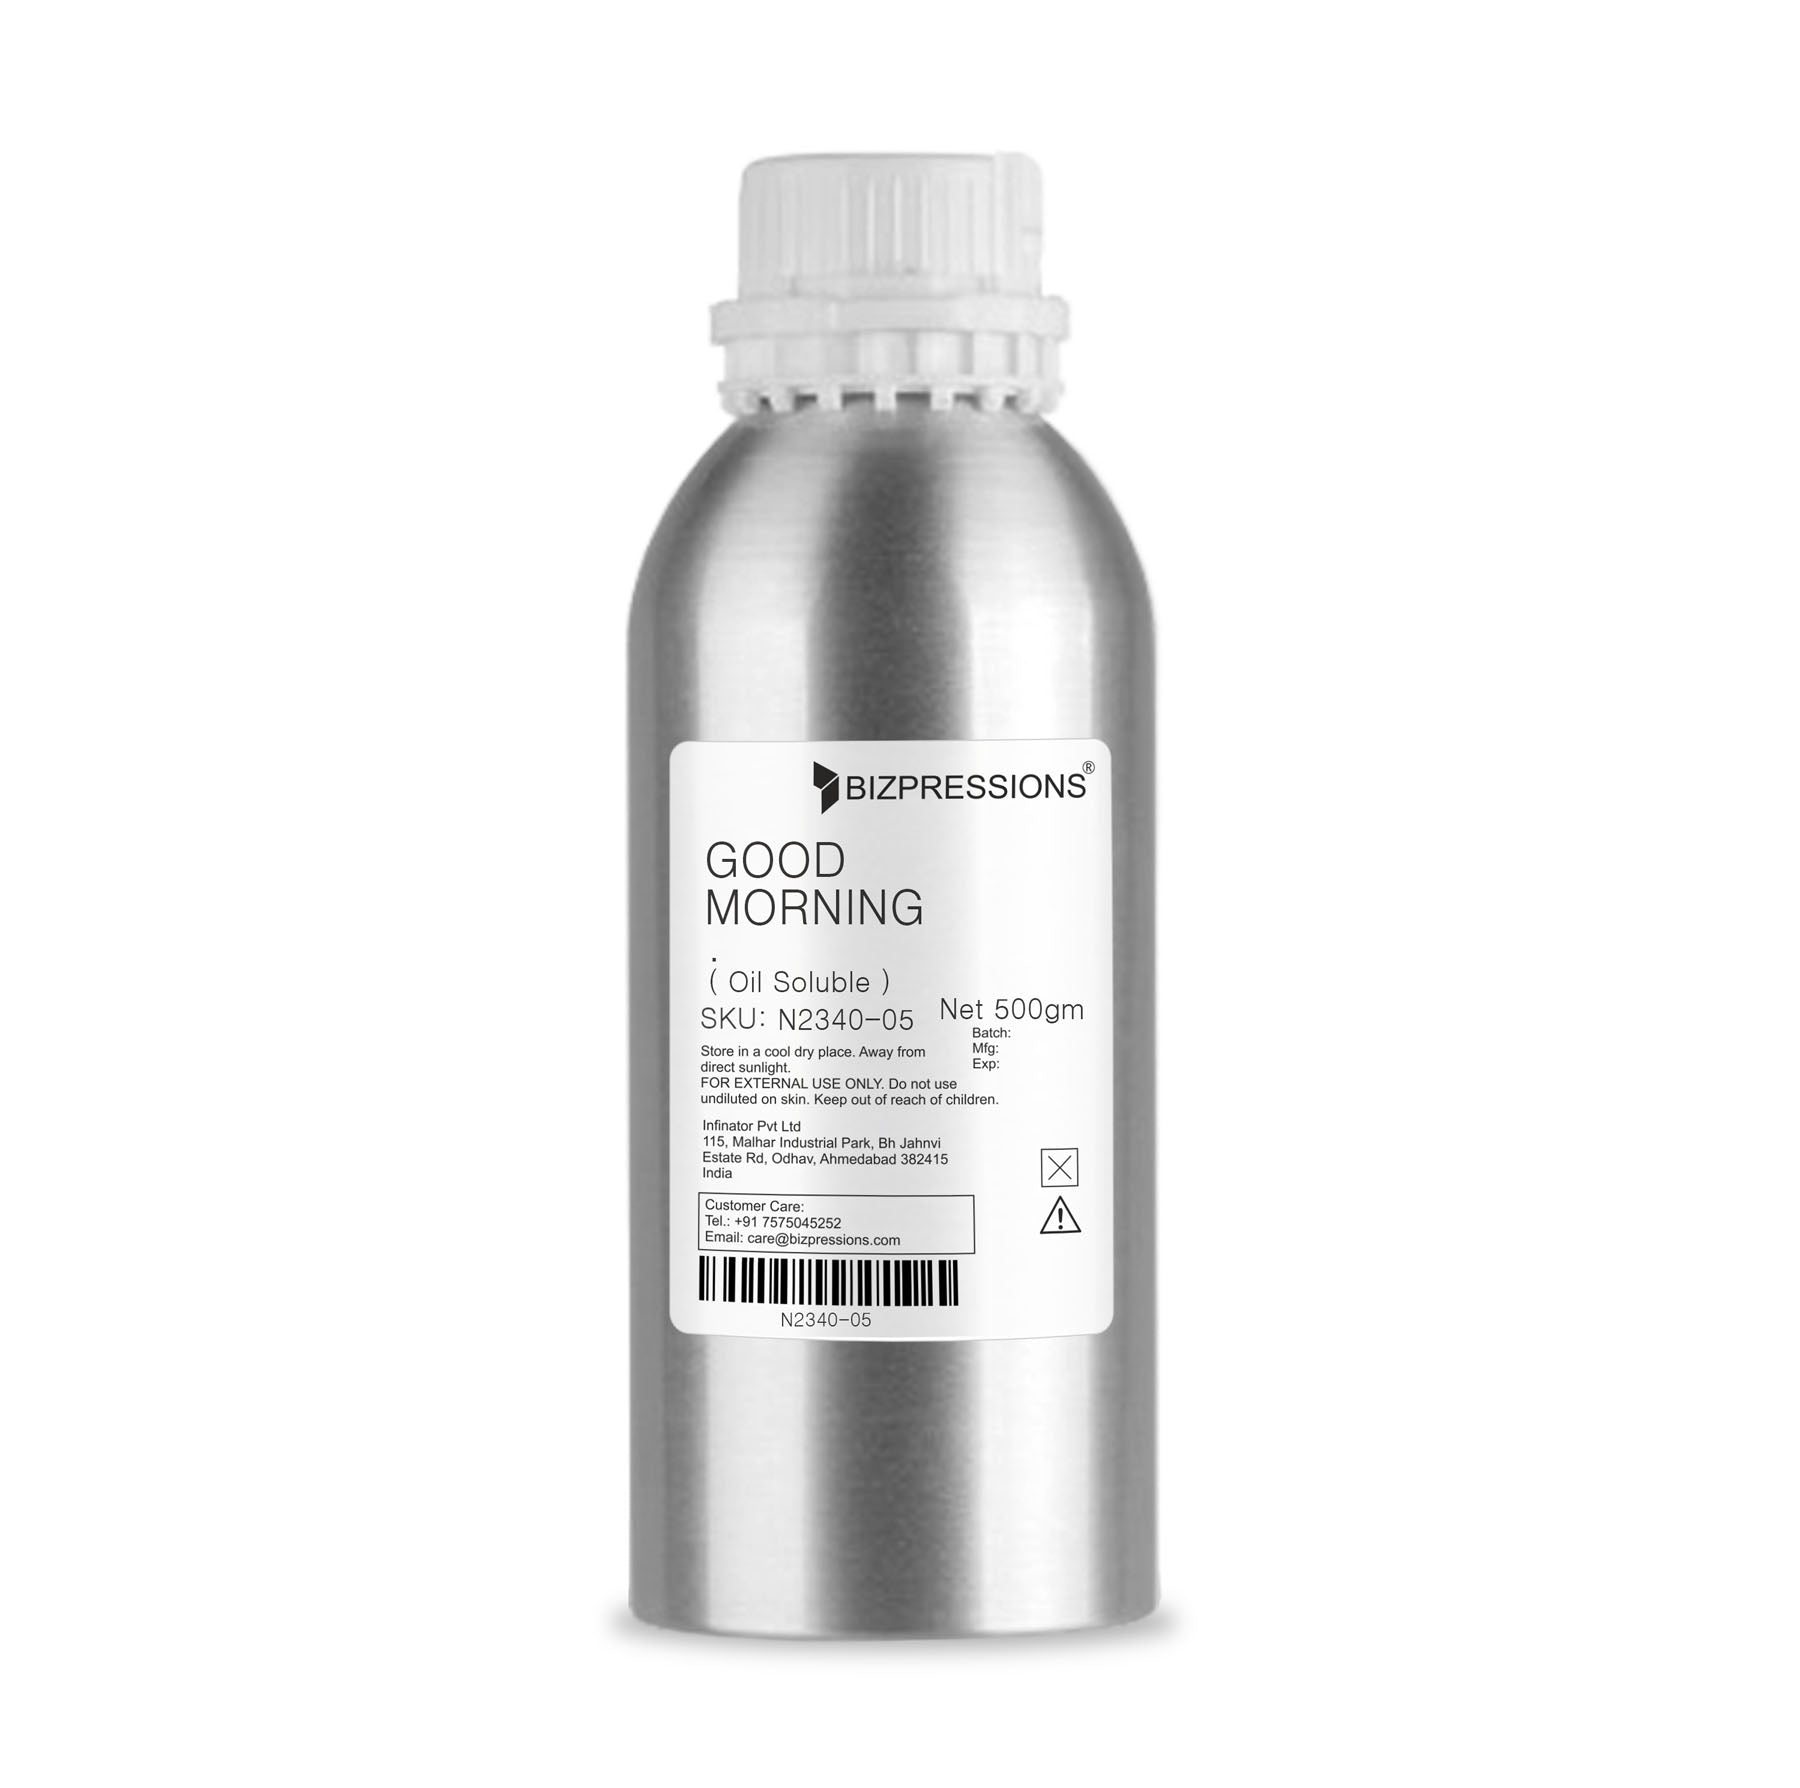 GOOD MORNING - Fragrance ( Oil Soluble ) - 500 gm